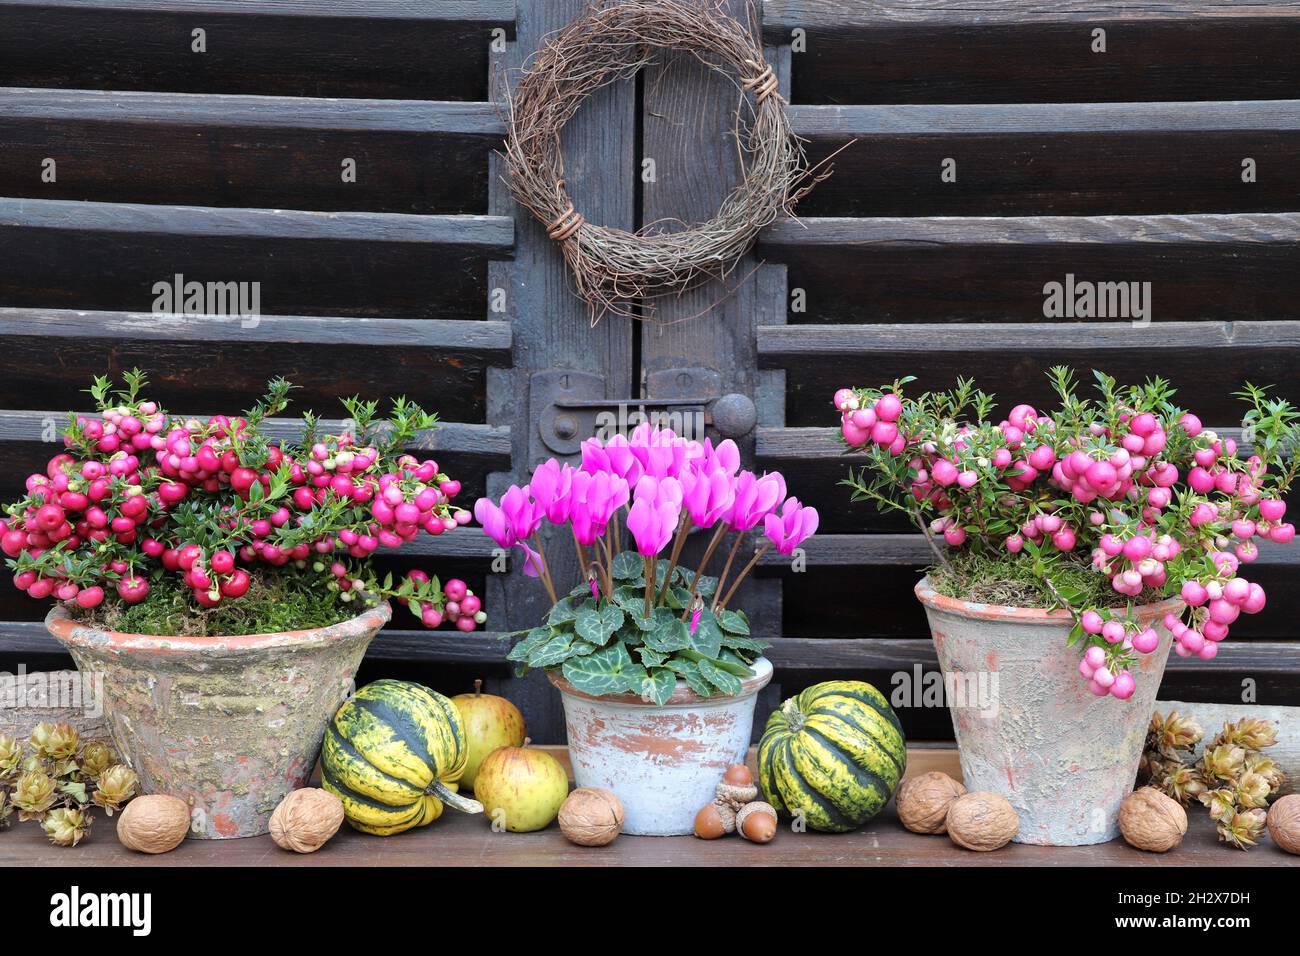 Rosa Cyclamen und stachelige Heide in Terrakotta-Töpfen als Gartendekoration Stockfoto